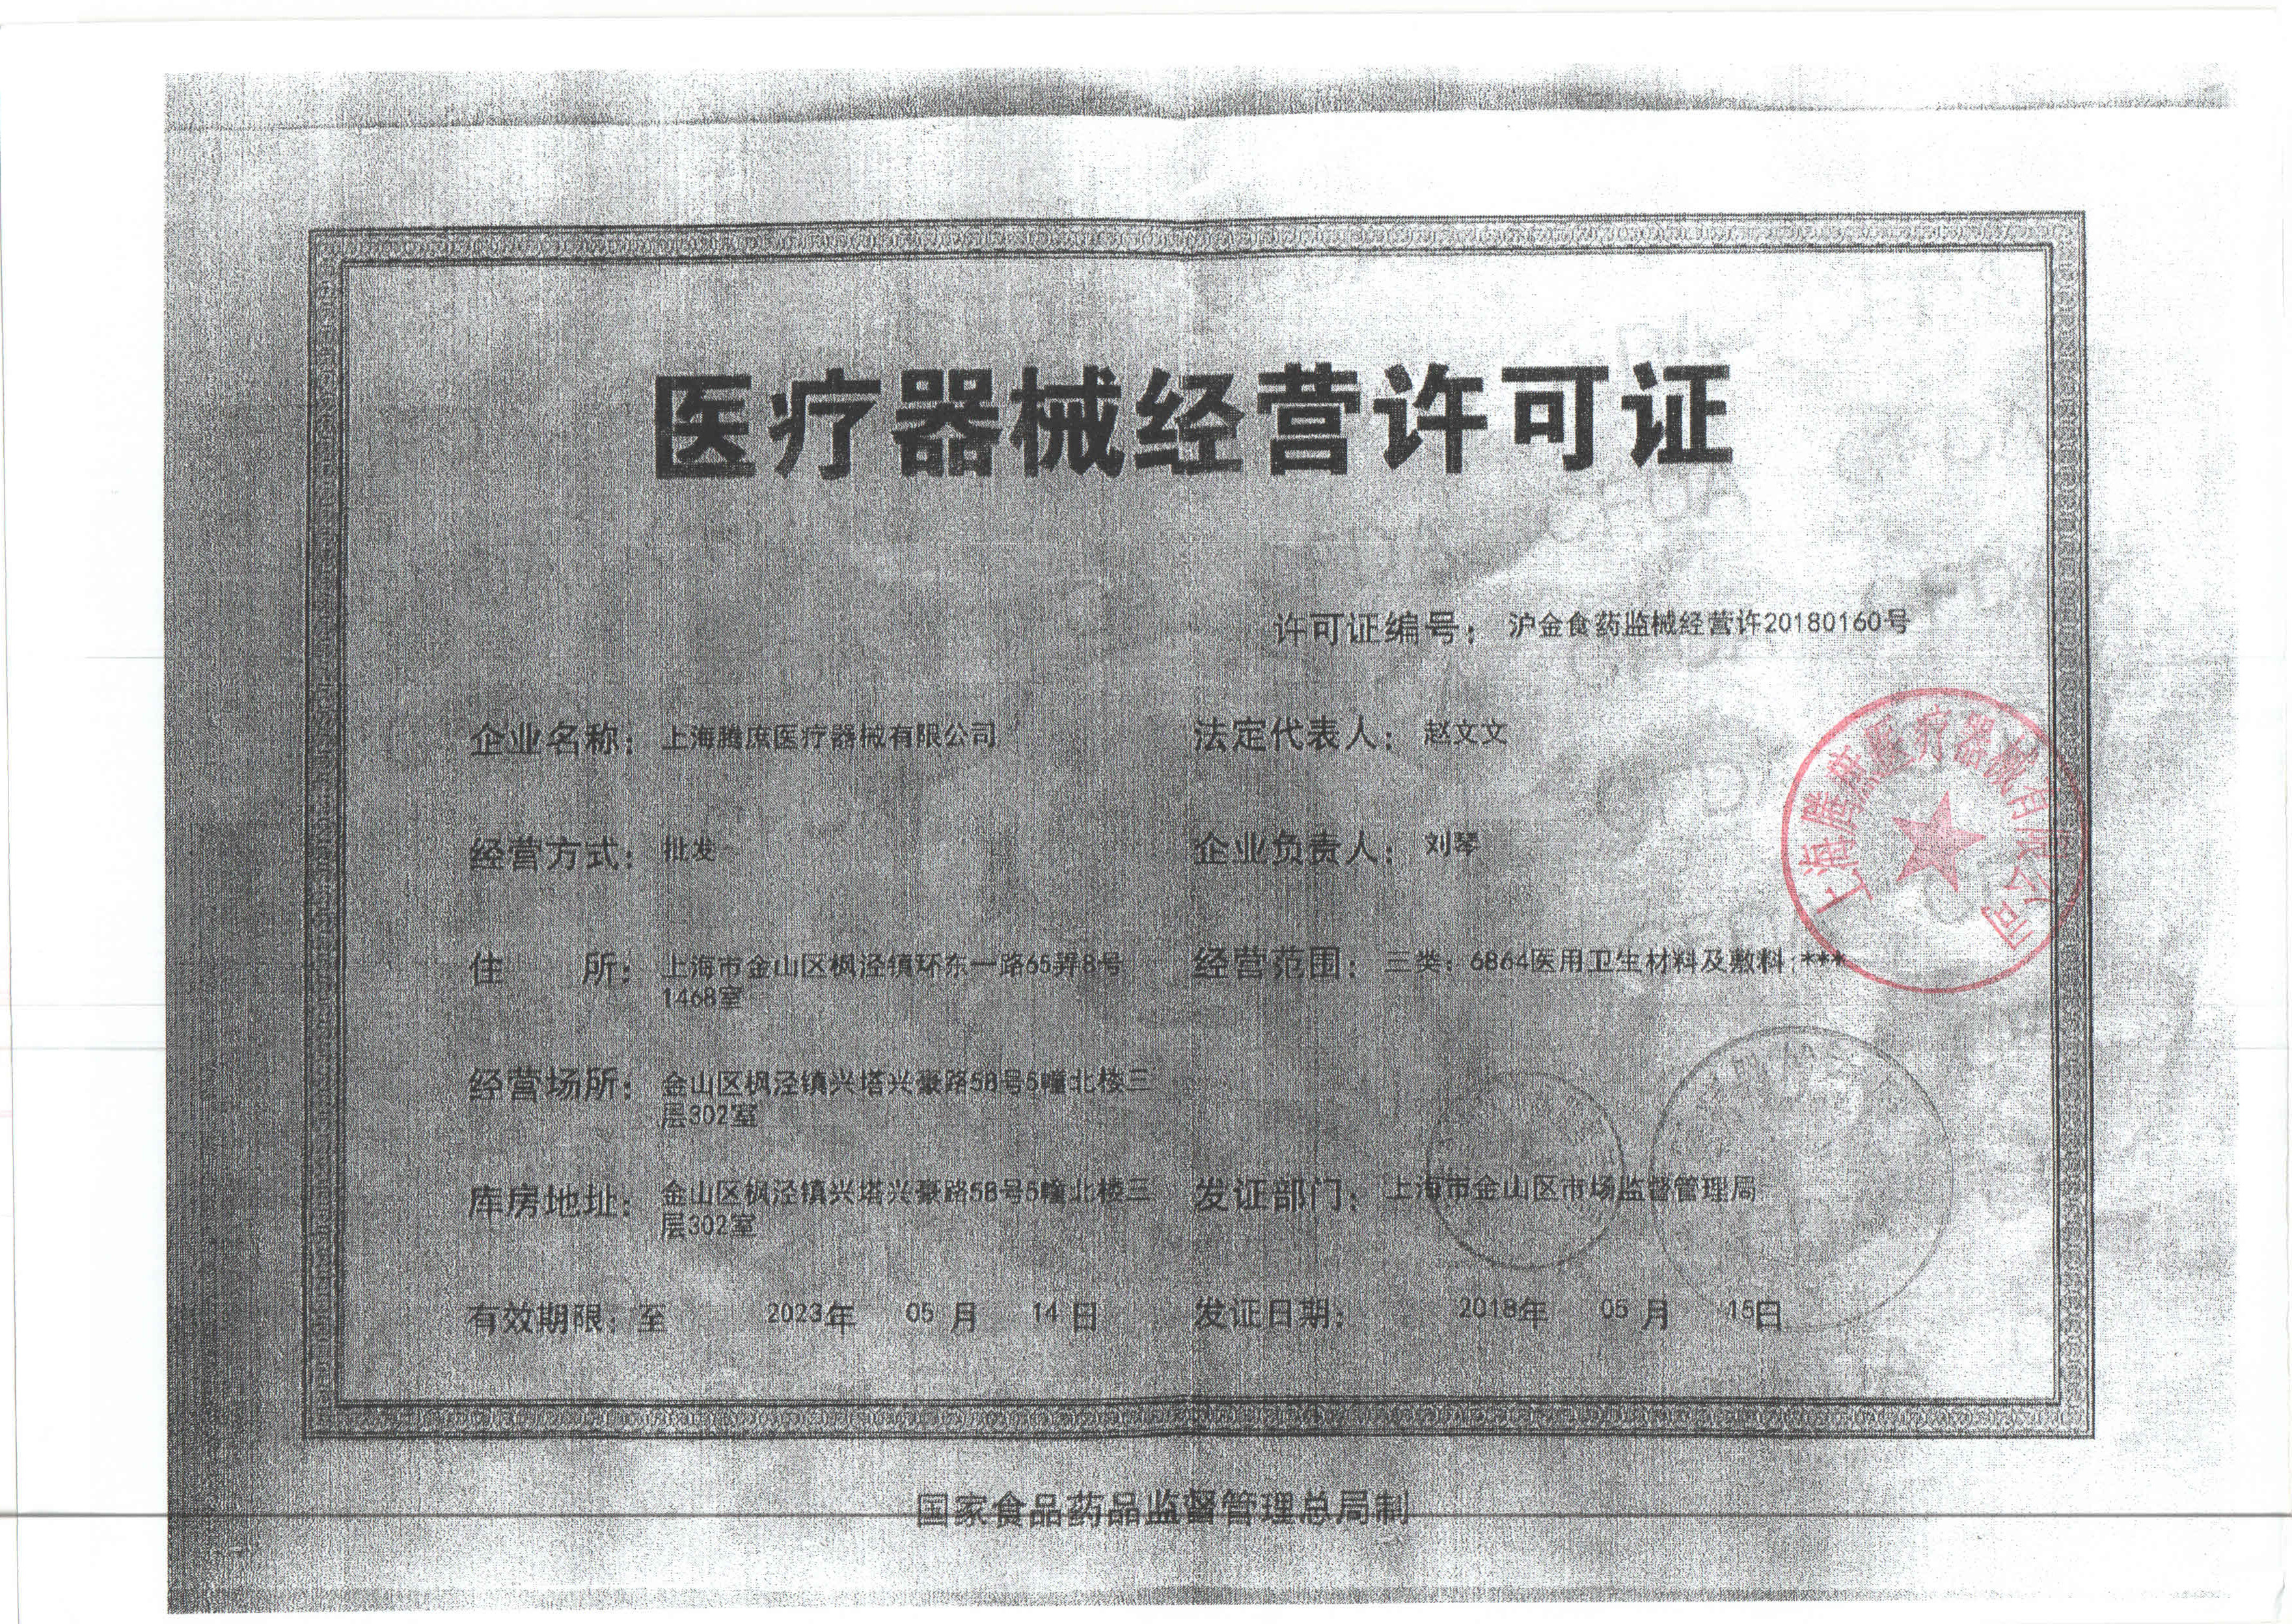 上海腾庶医疗器械-医疗器械经营许可证